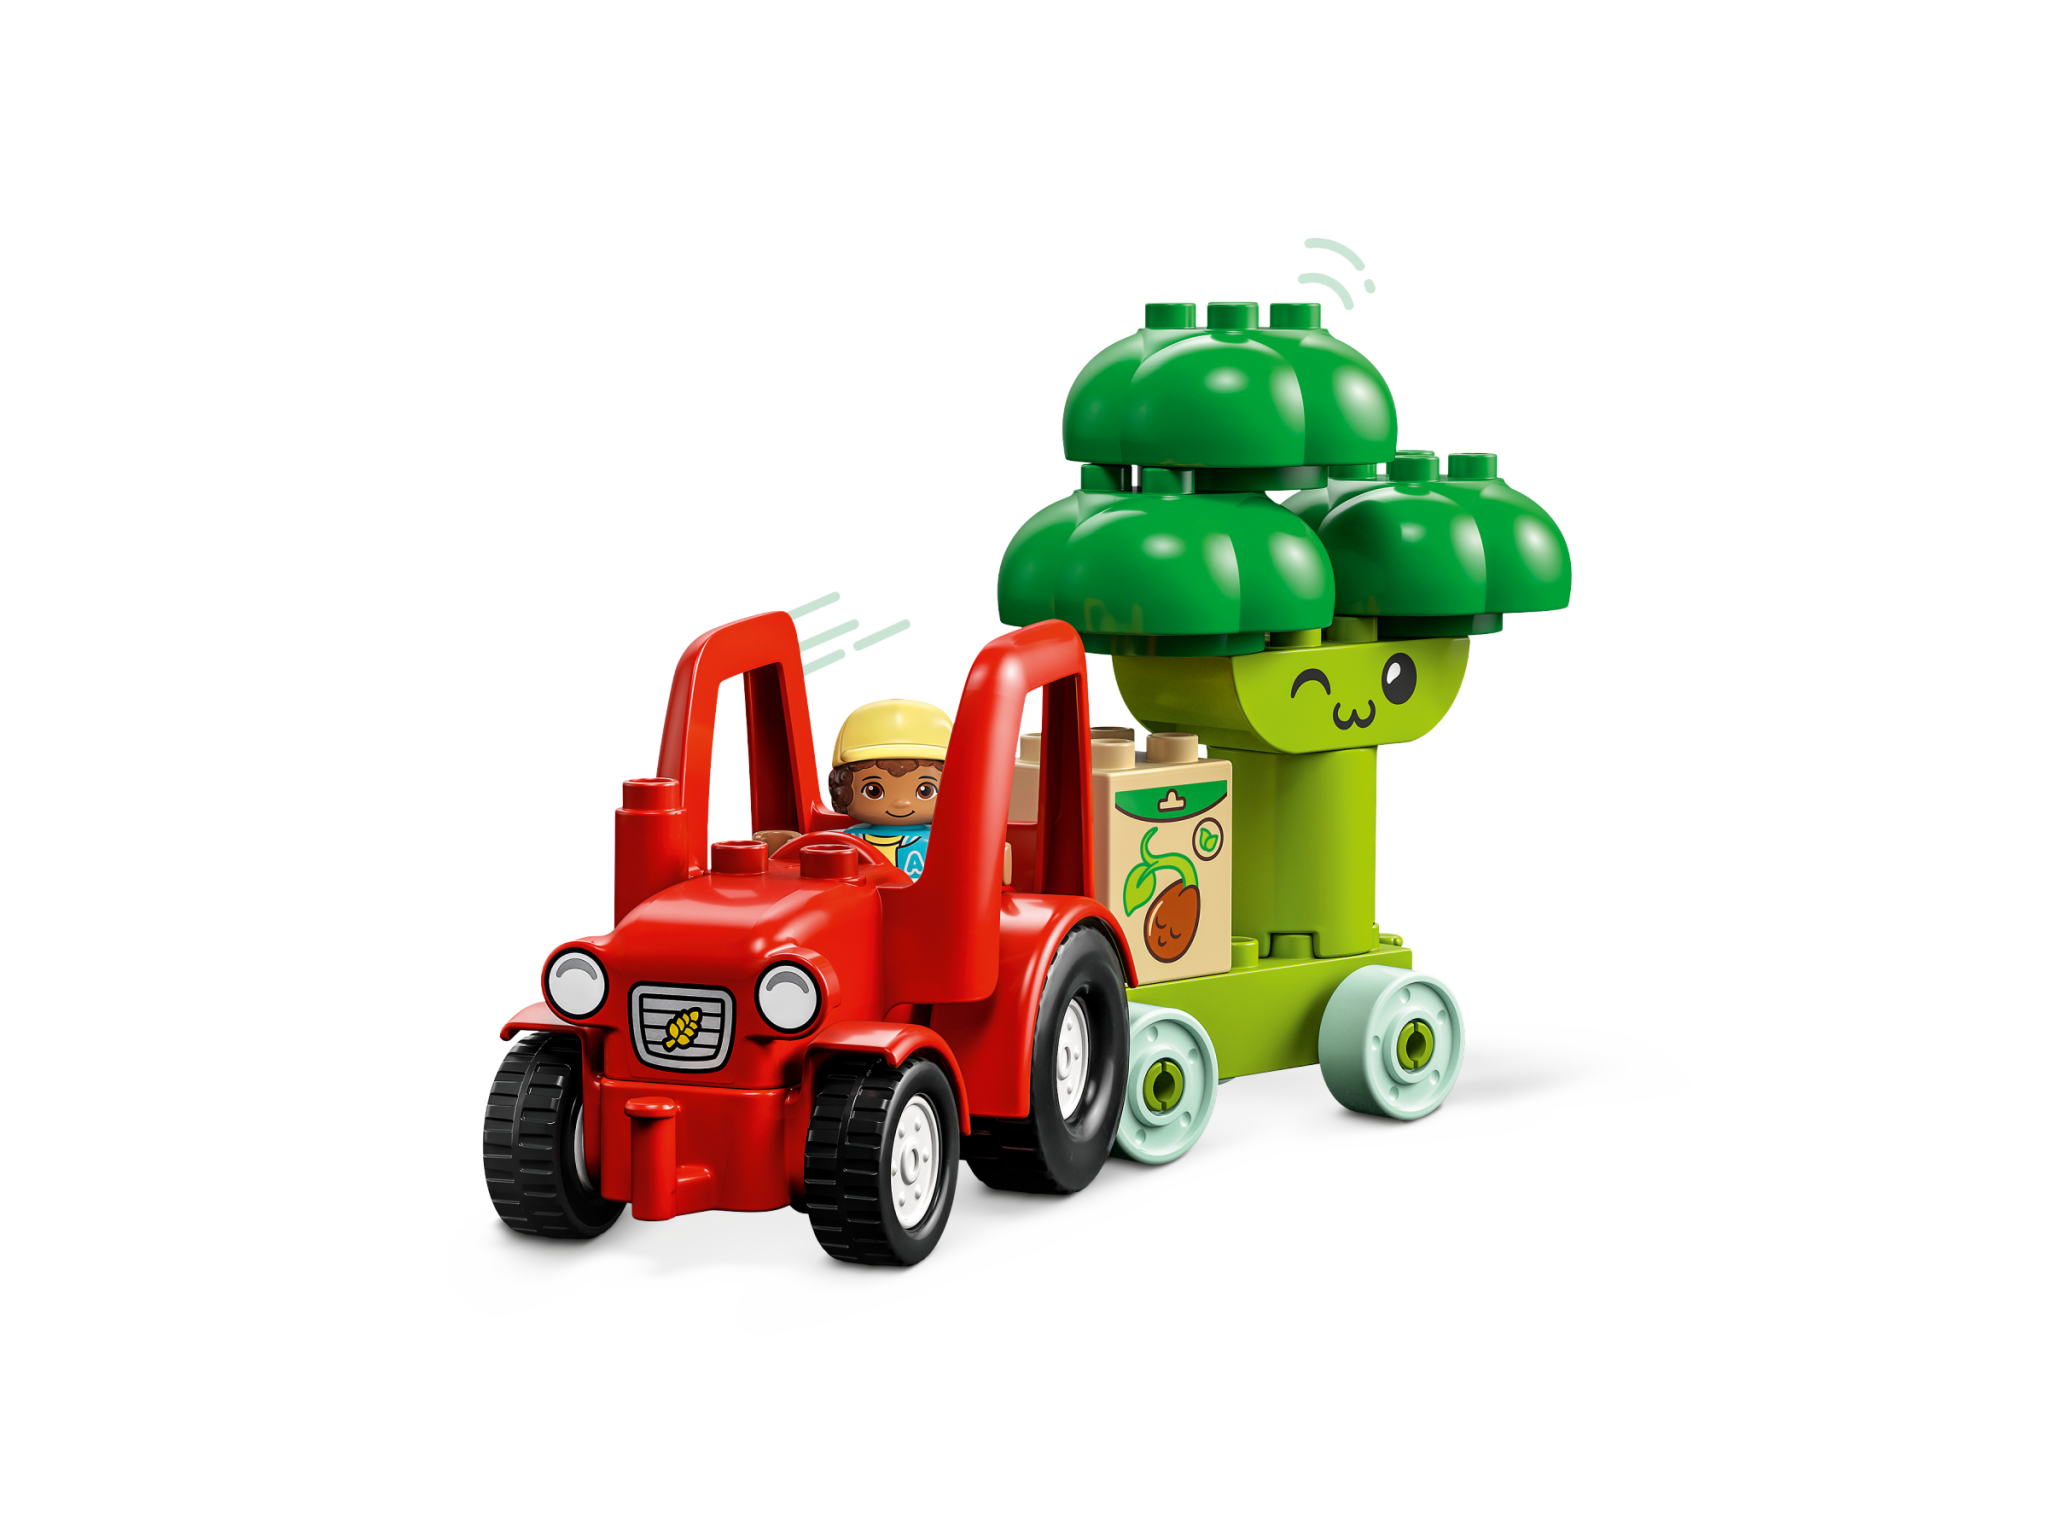 Lego Lego 10982 Duplo - Le tracteur des fruits et légumes